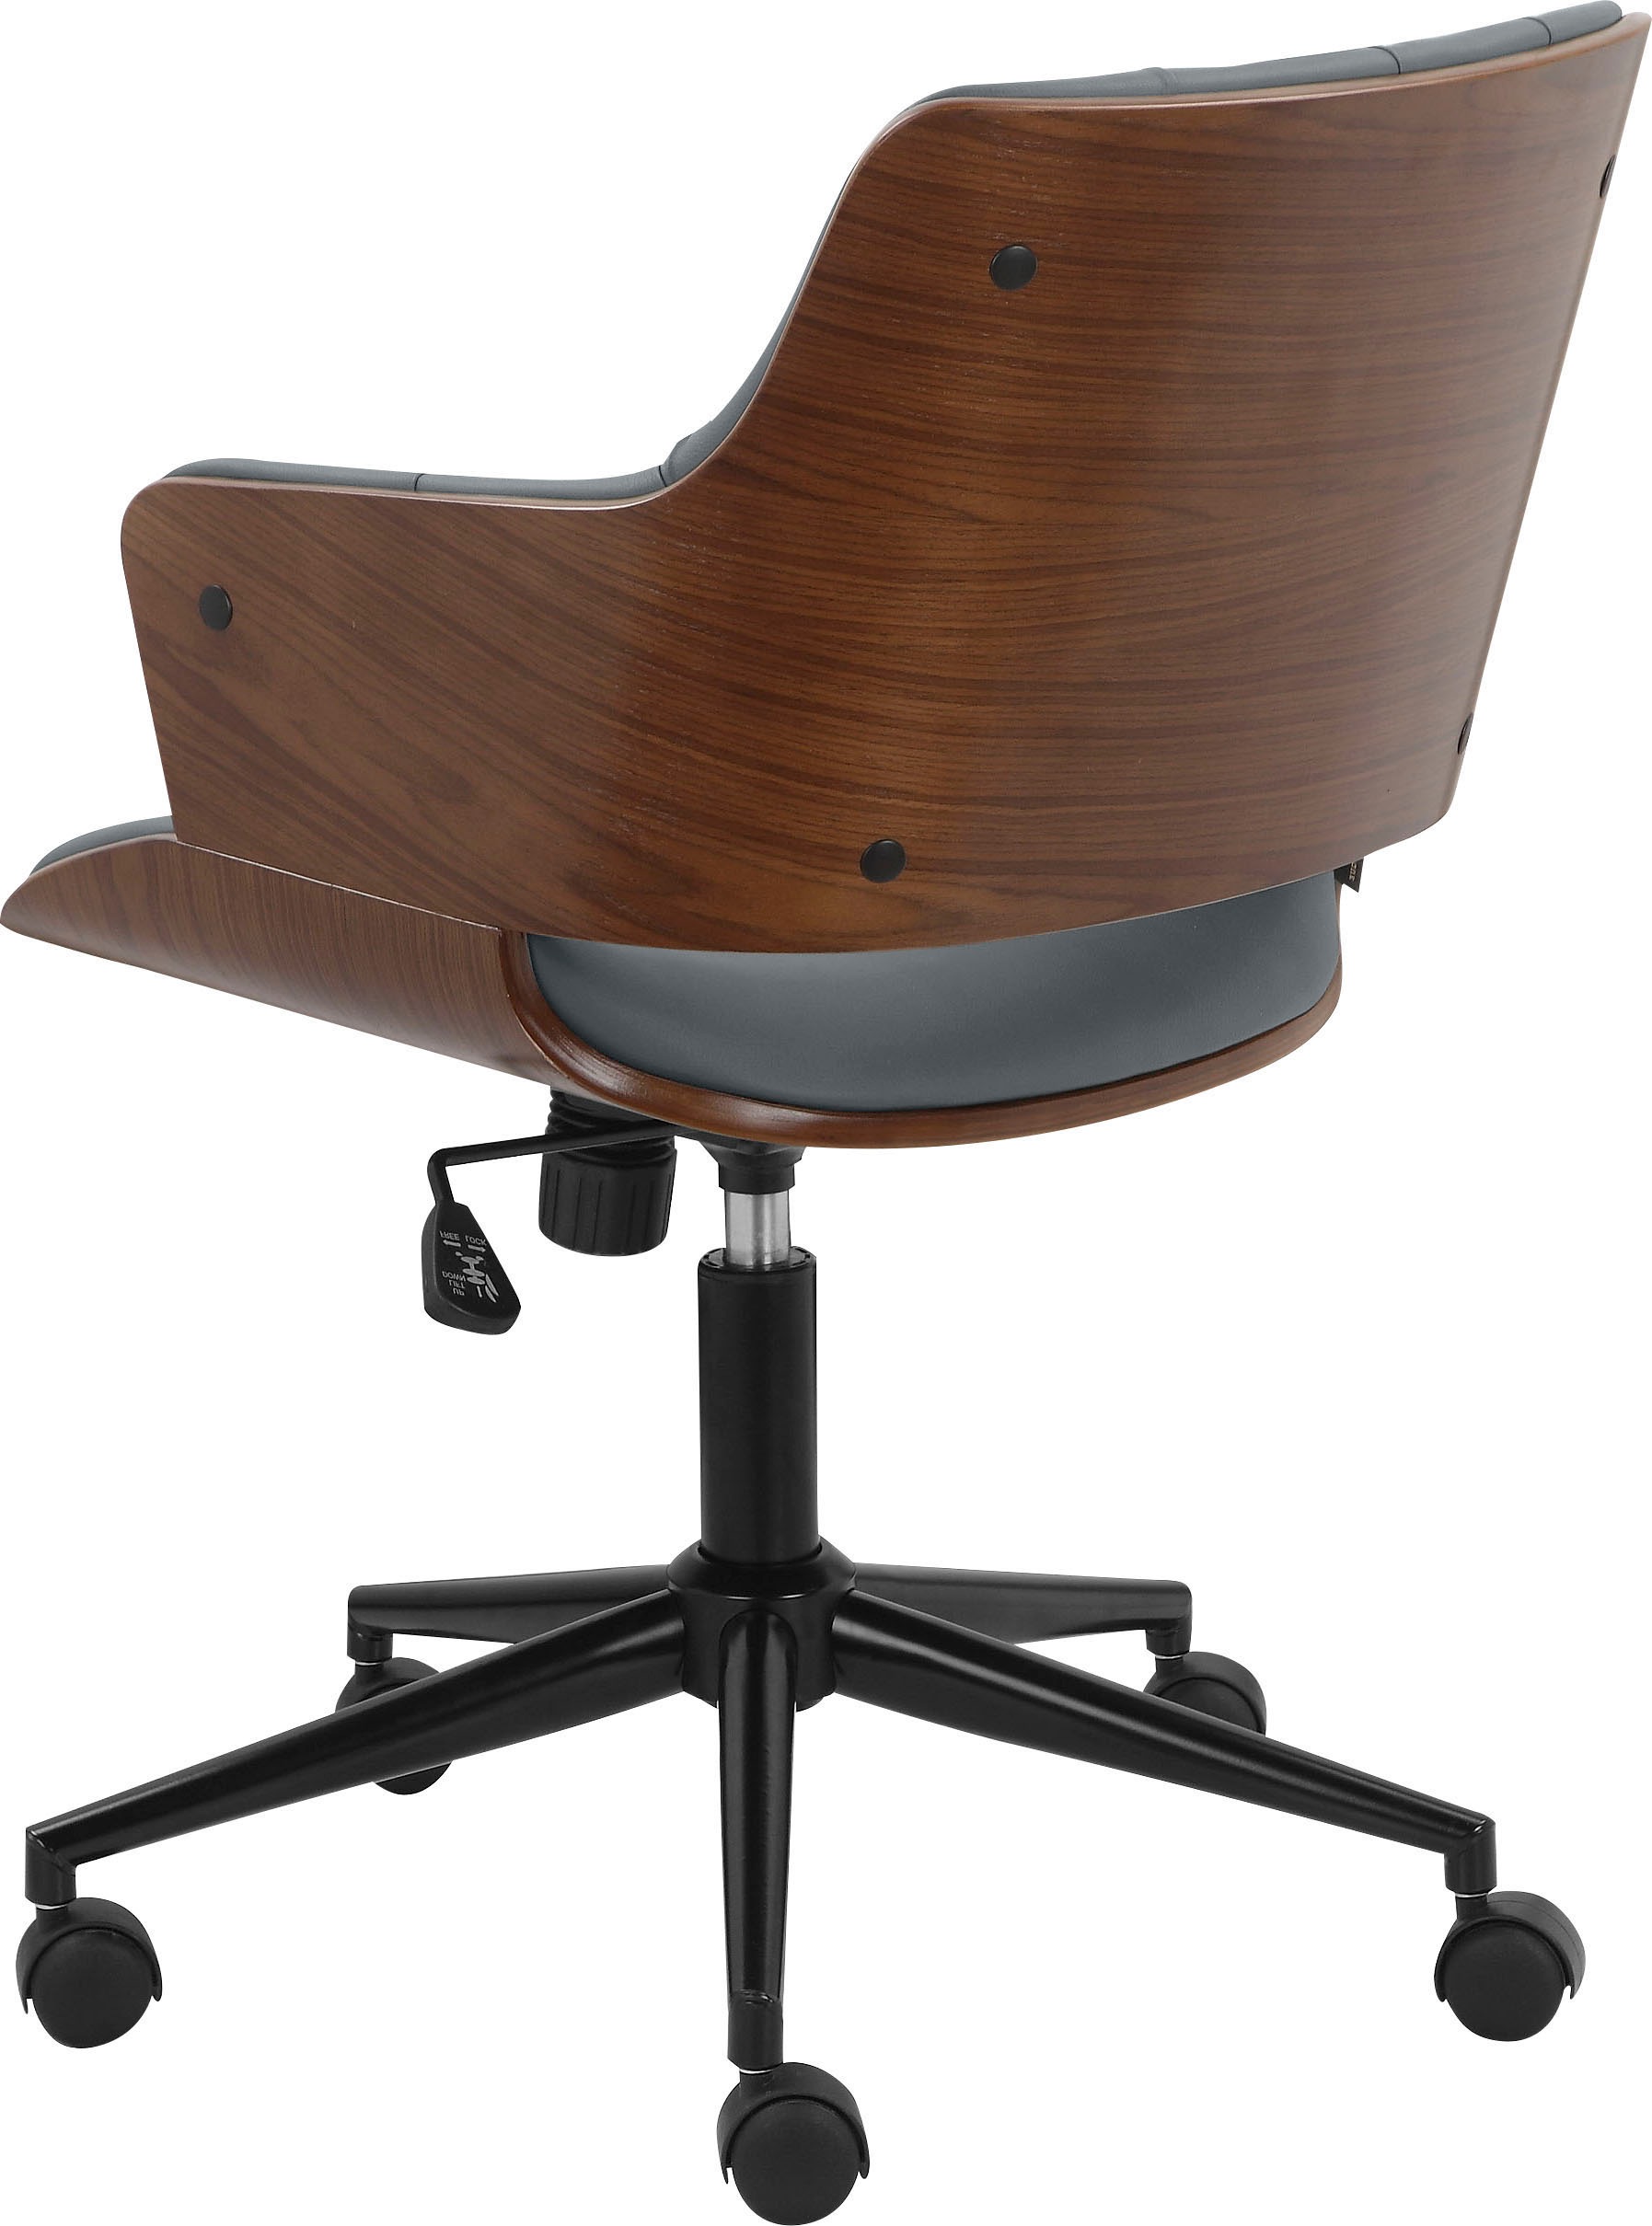 Leonique Armlehnstuhl »Lariaud«, 1 St., Kunstleder, Sitz und Rücken gepolstert, Pappelholz Verschalung, Sitzhöhe 47-57 cm